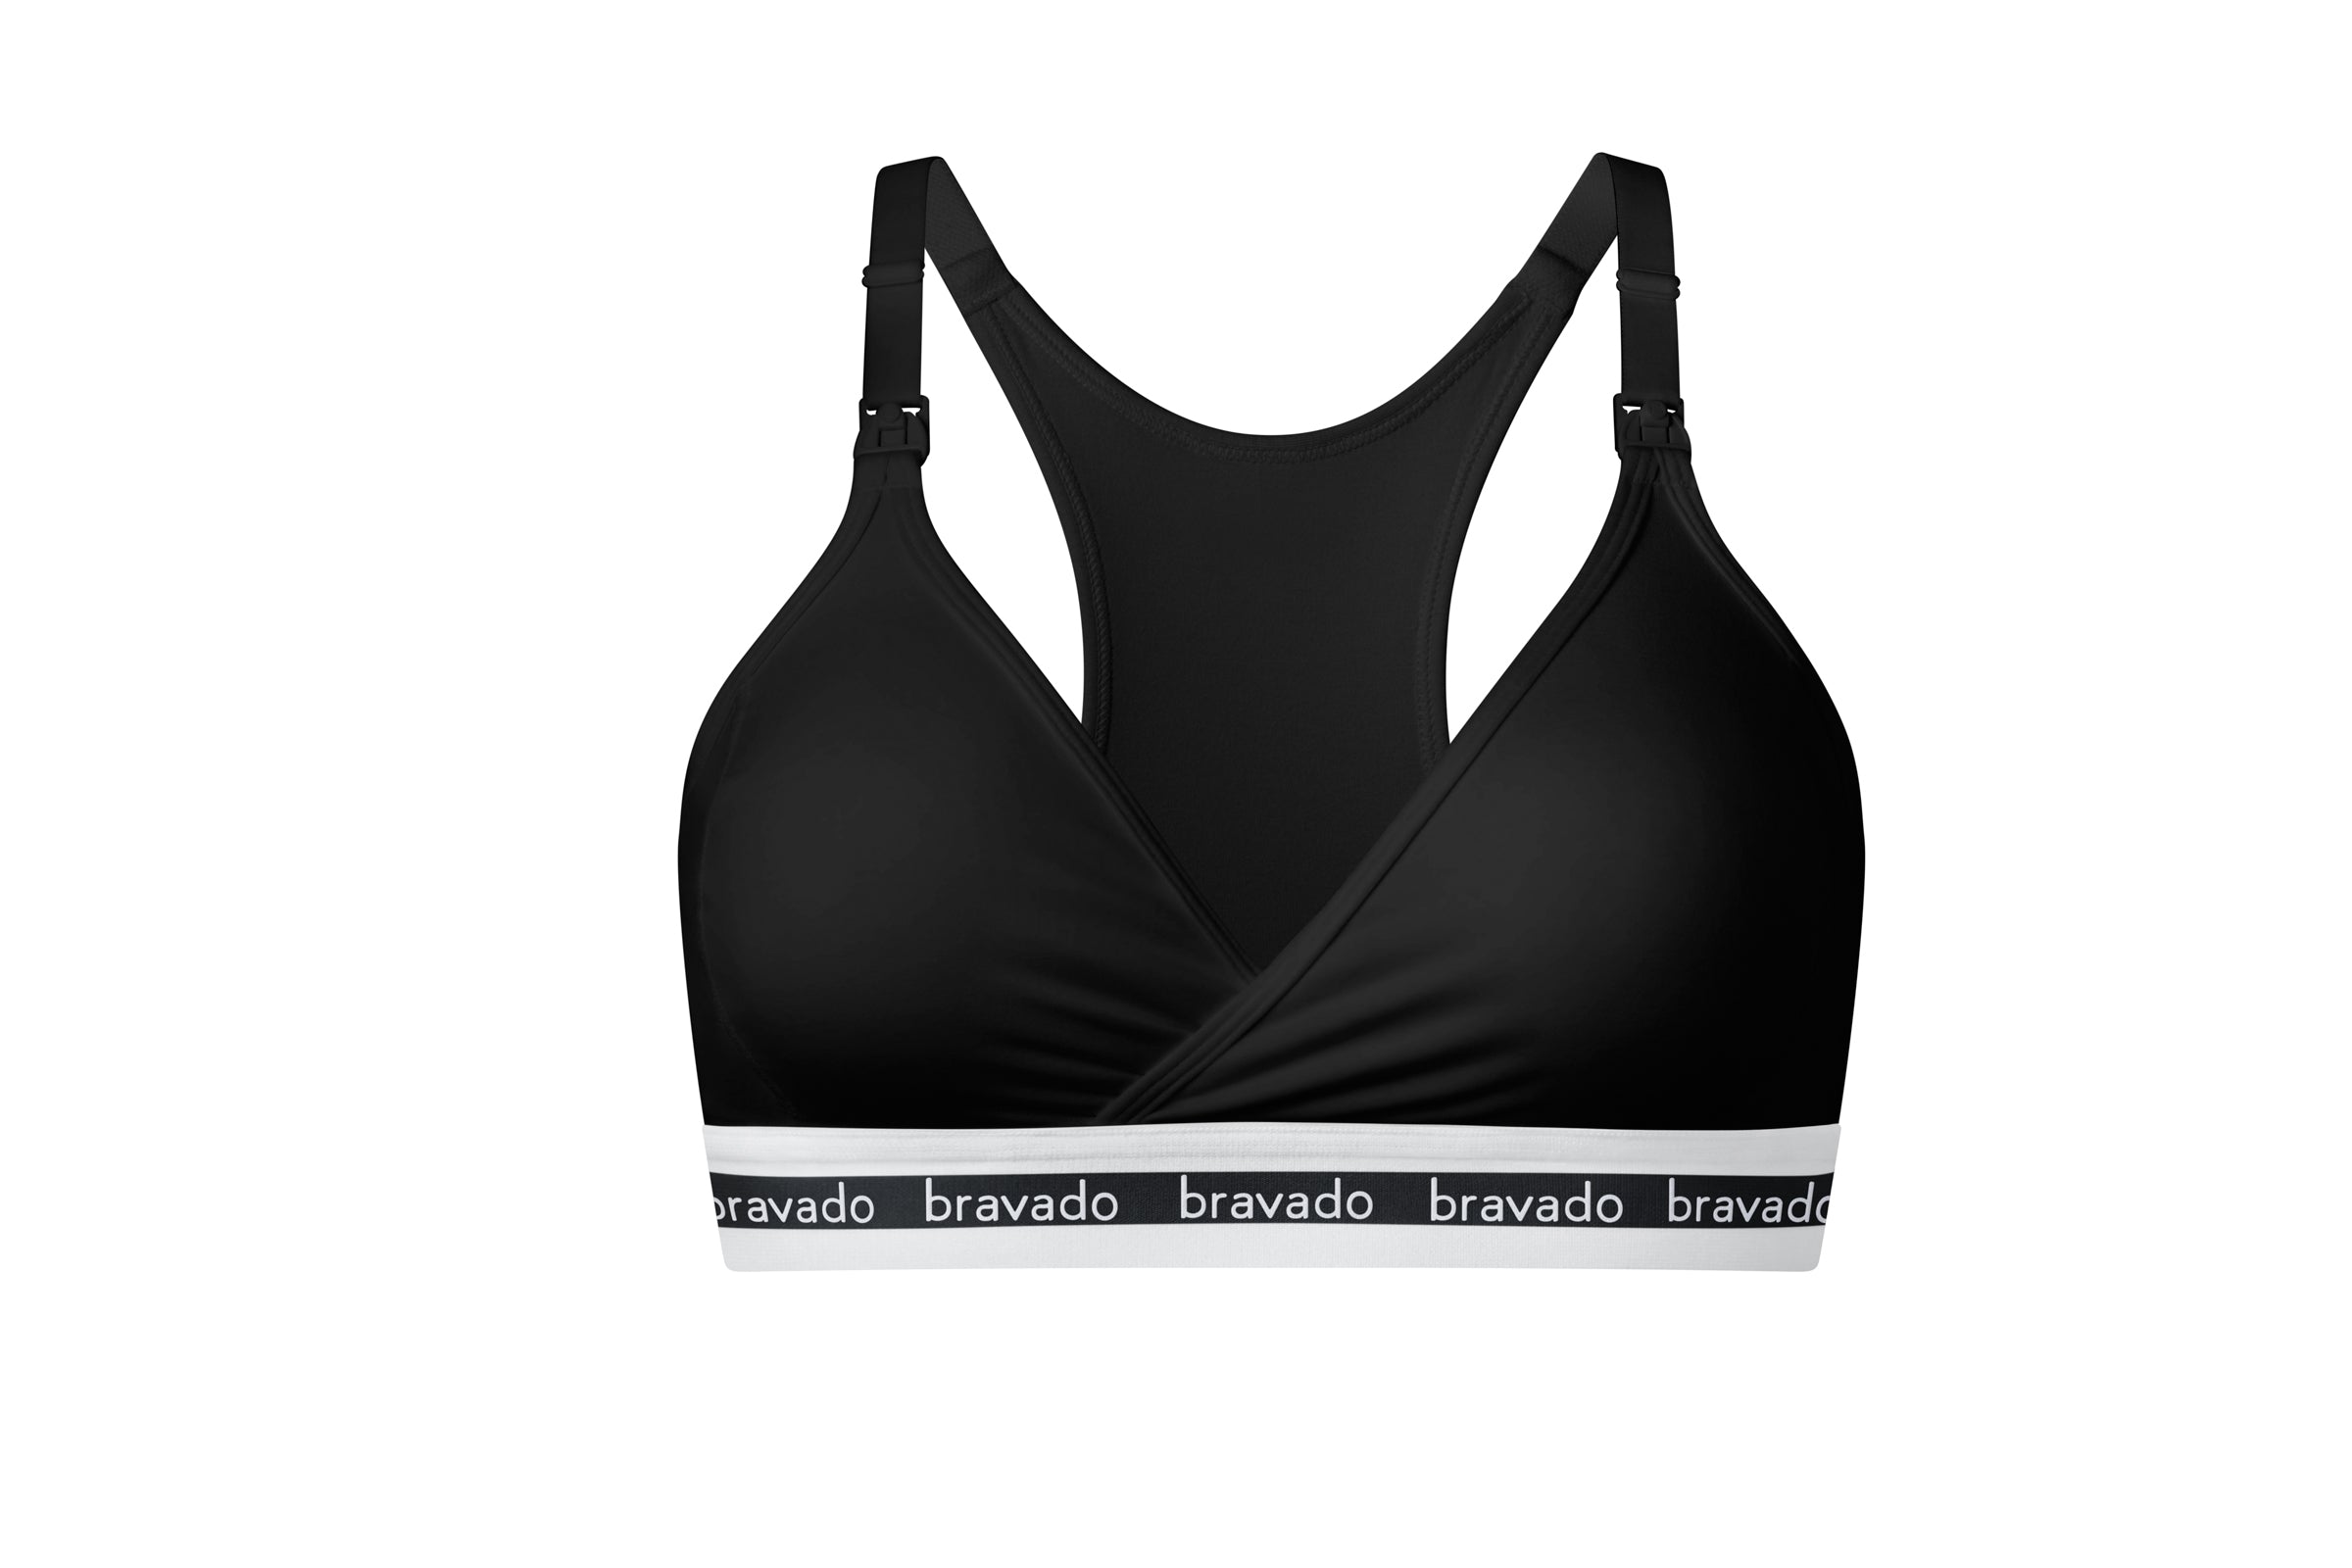 Bravado Original cotton nursing bra in black